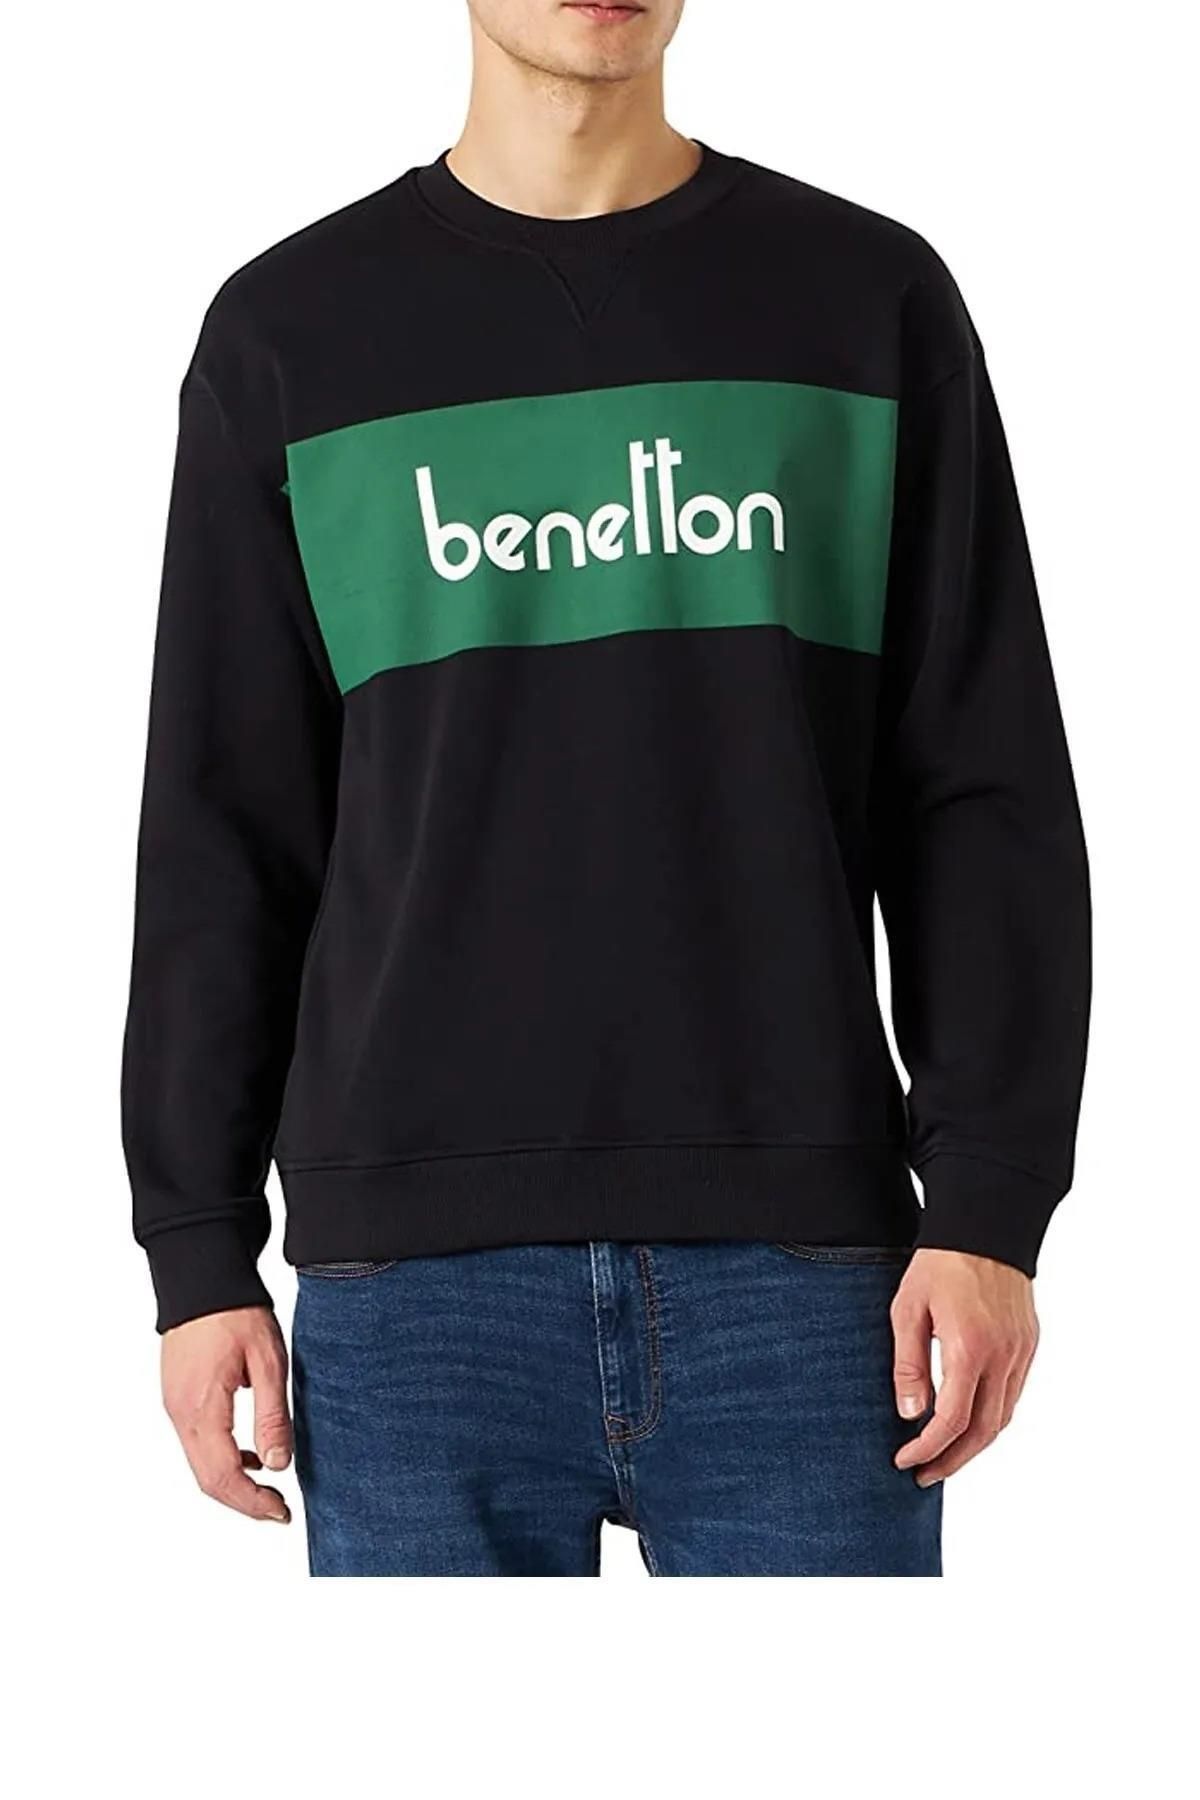 Benetton Erk SMU_Benetton Yazılı Sweatshirt